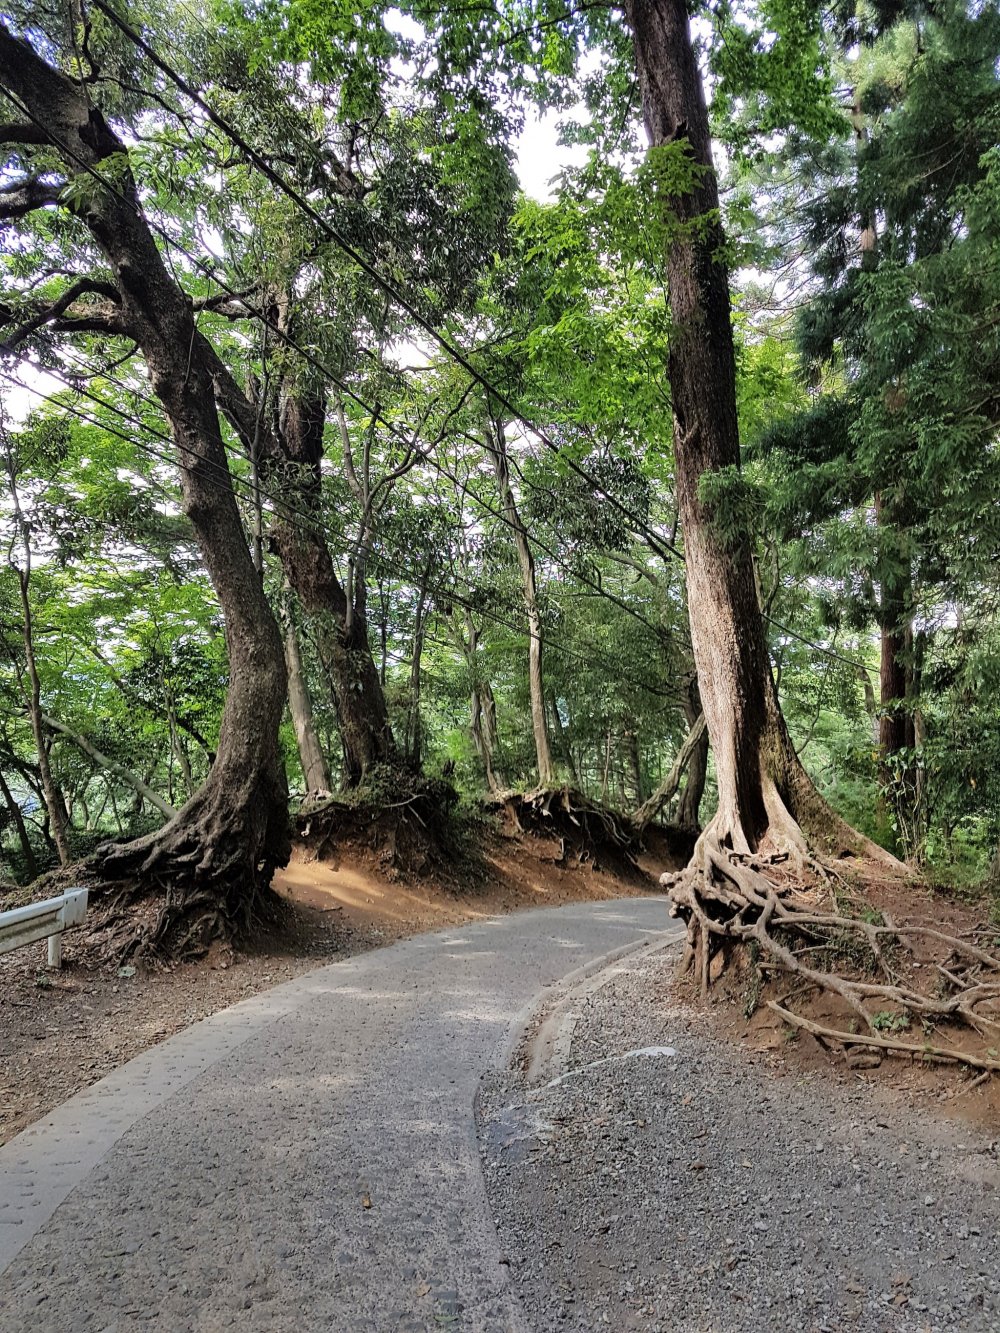  ต้นสนญี่ปุ่นหรือต้นซุกิบางต้นมีรากโผล่ขึ้นมาเหนือดิน คนญี่ปุ่นจึงให้ชื่อว่า'ทะคะโอะ-ซุกิ' (Tako-sugi) หรือต้นสนปลาหมึกยักษ์ 